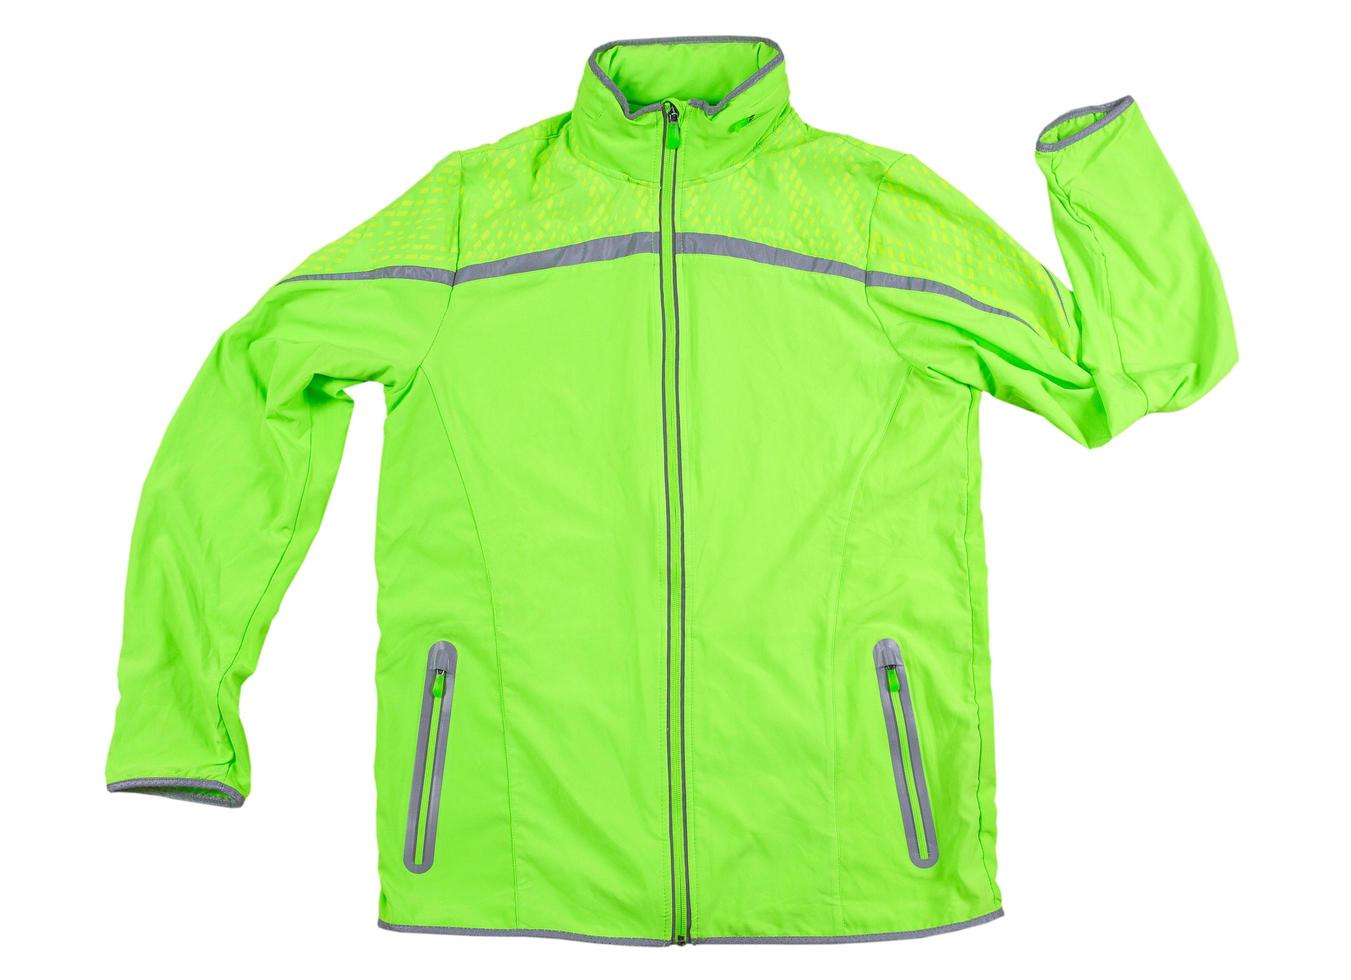 Chaqueta deportiva aislada, chaqueta verde para correr o andar en bicicleta sobre un fondo blanco - reflectores en la chaqueta foto